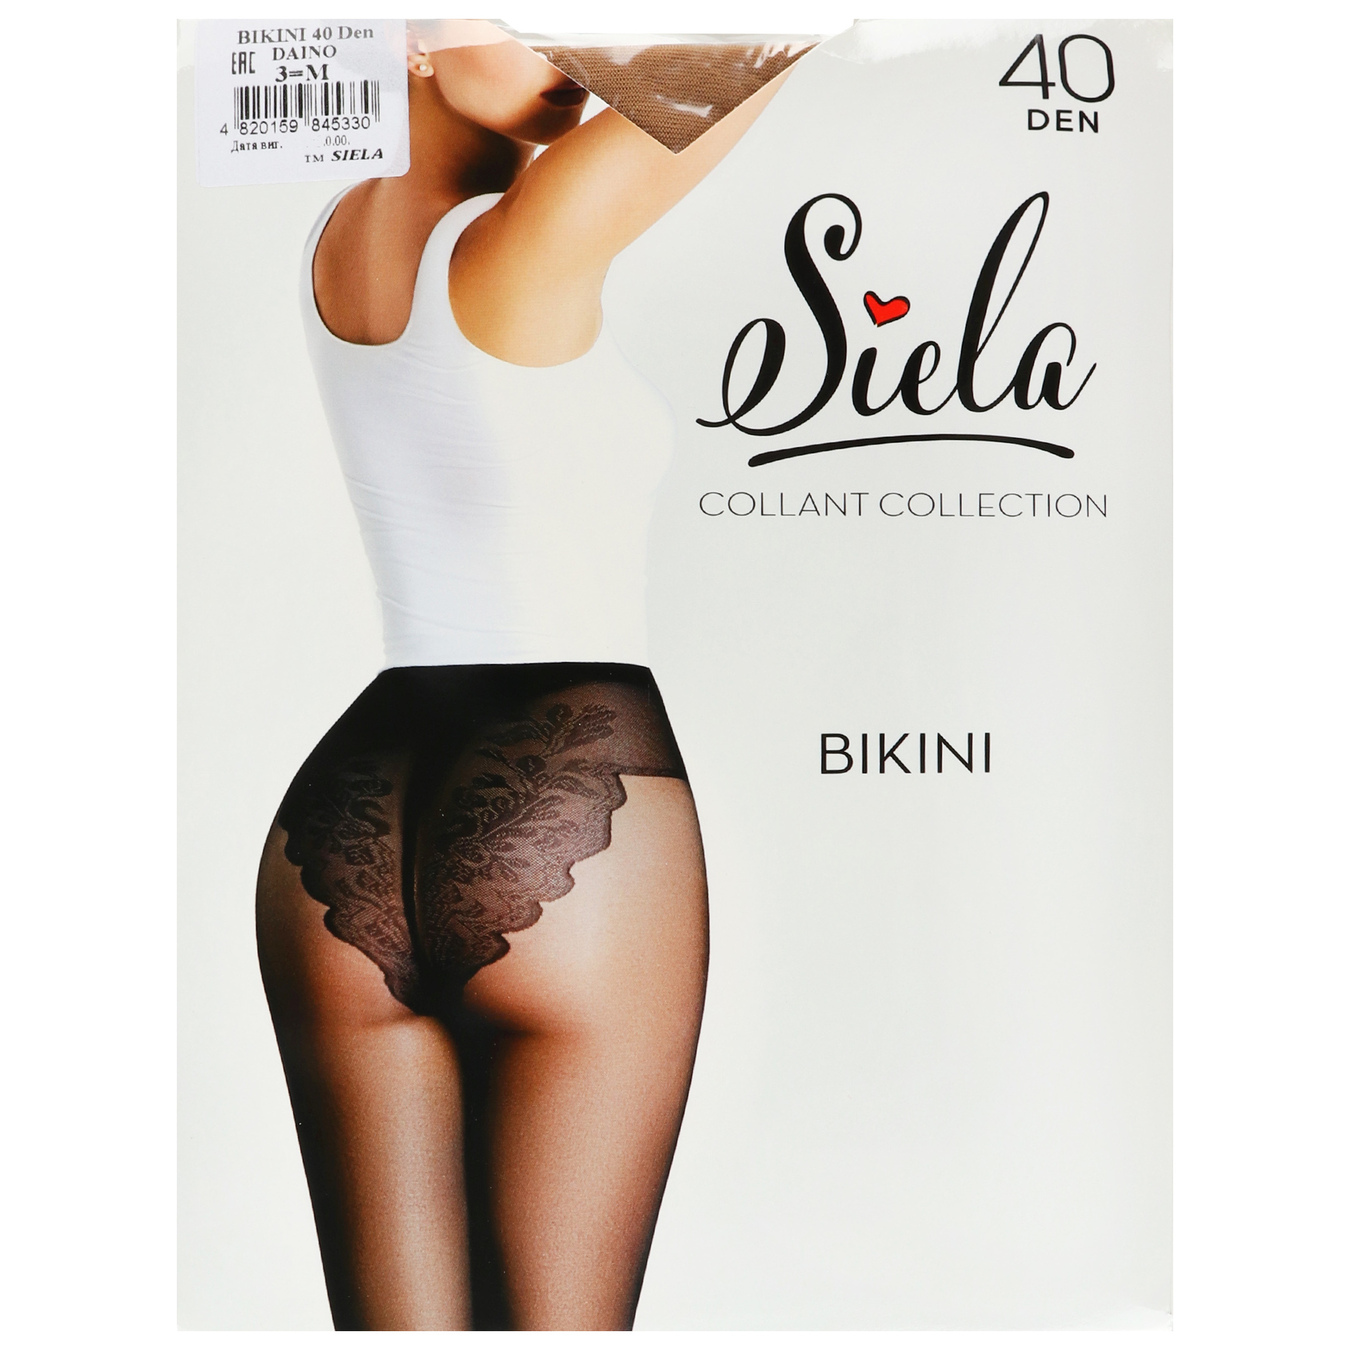 Women's tights Siela Bikini 40 days daino size 3